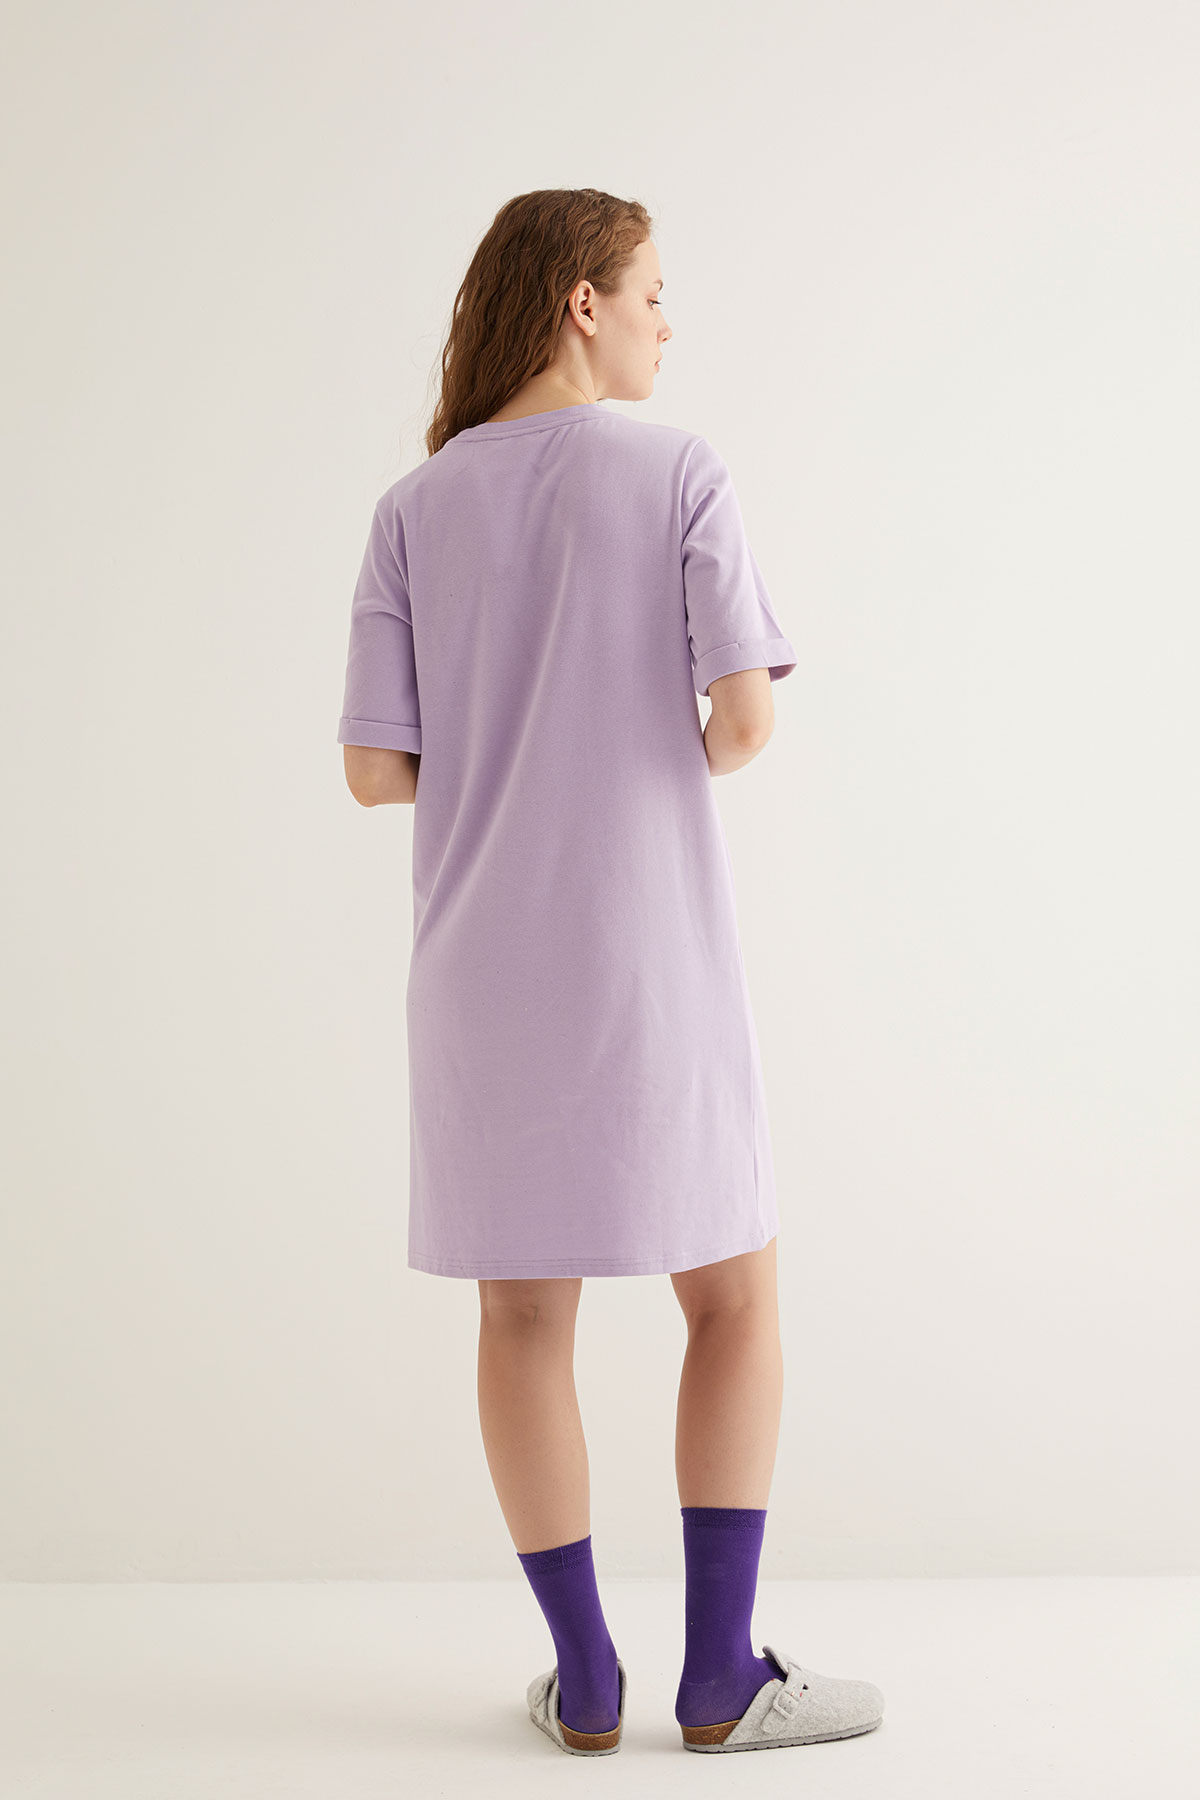 Kadın Pamuklu Baskı Detaylı Kısa Kollu T-shirt Elbise